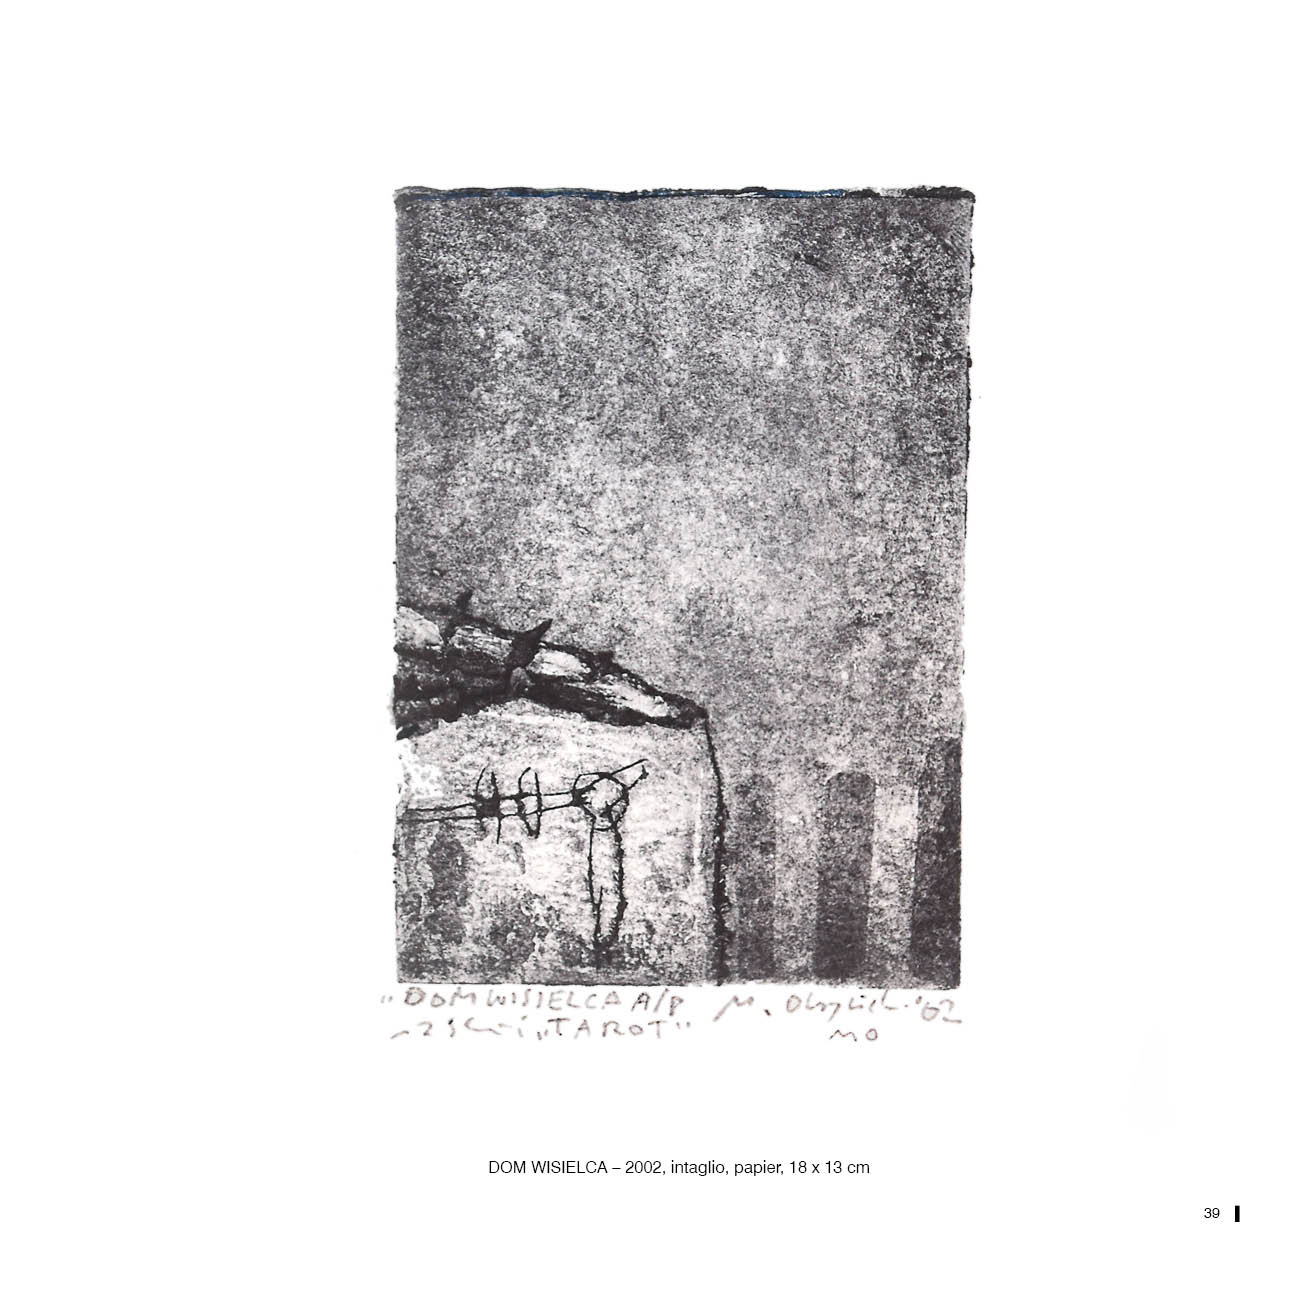 DOM WISIELCA – 2002, intaglio, papier, 18 x 13 cm